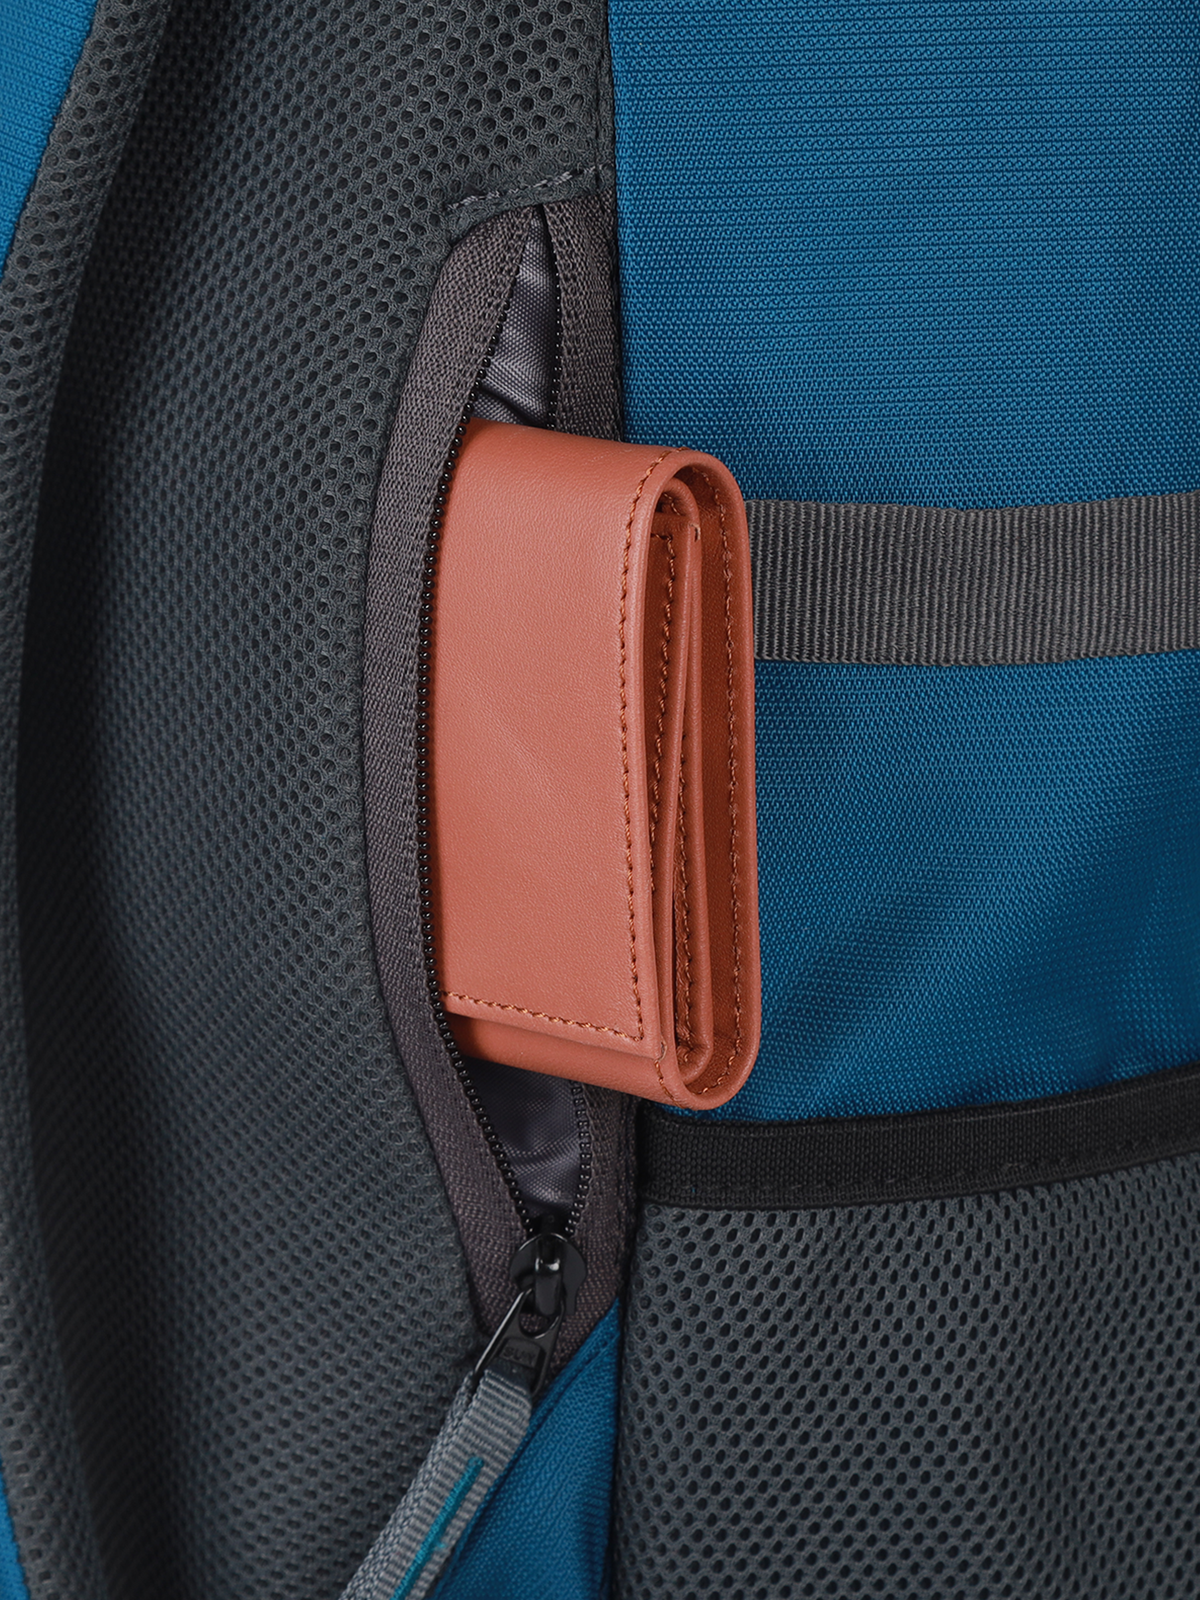 Explorer Laptop Backpack Duffle Bag Sling Bag (Blue)